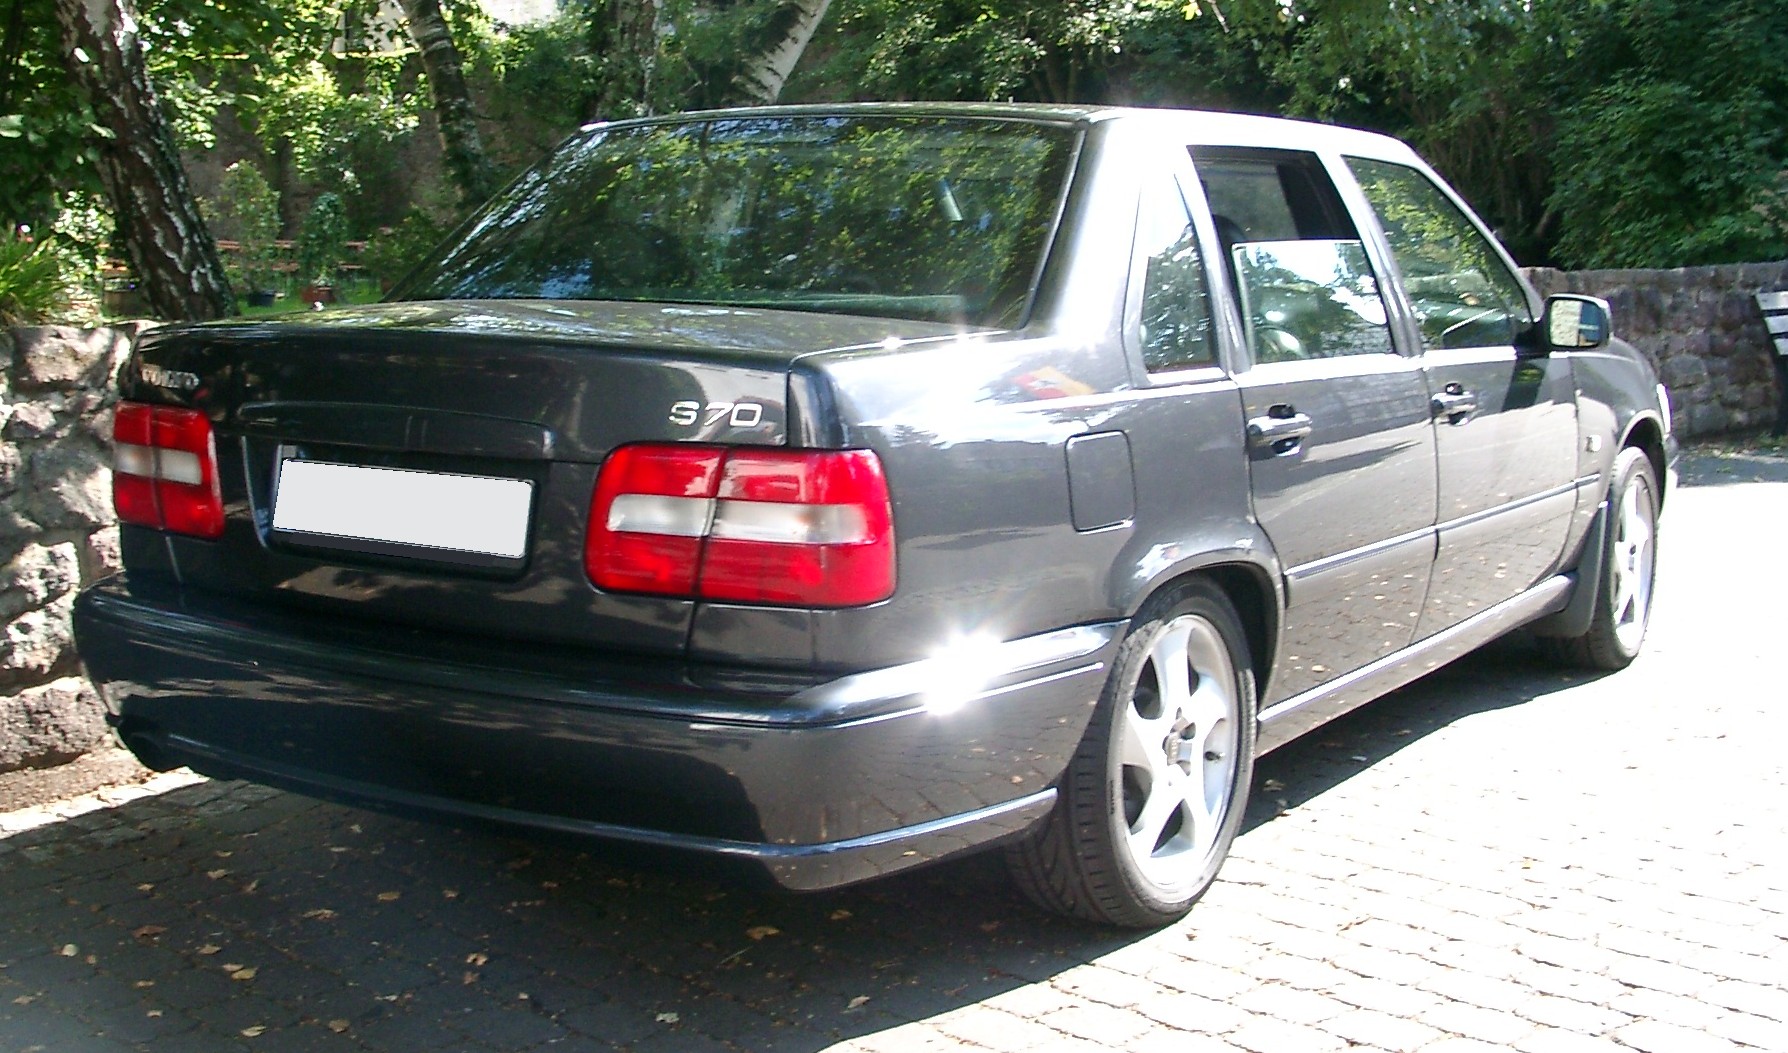 File:Volvo S70 rear 20070823.jpg